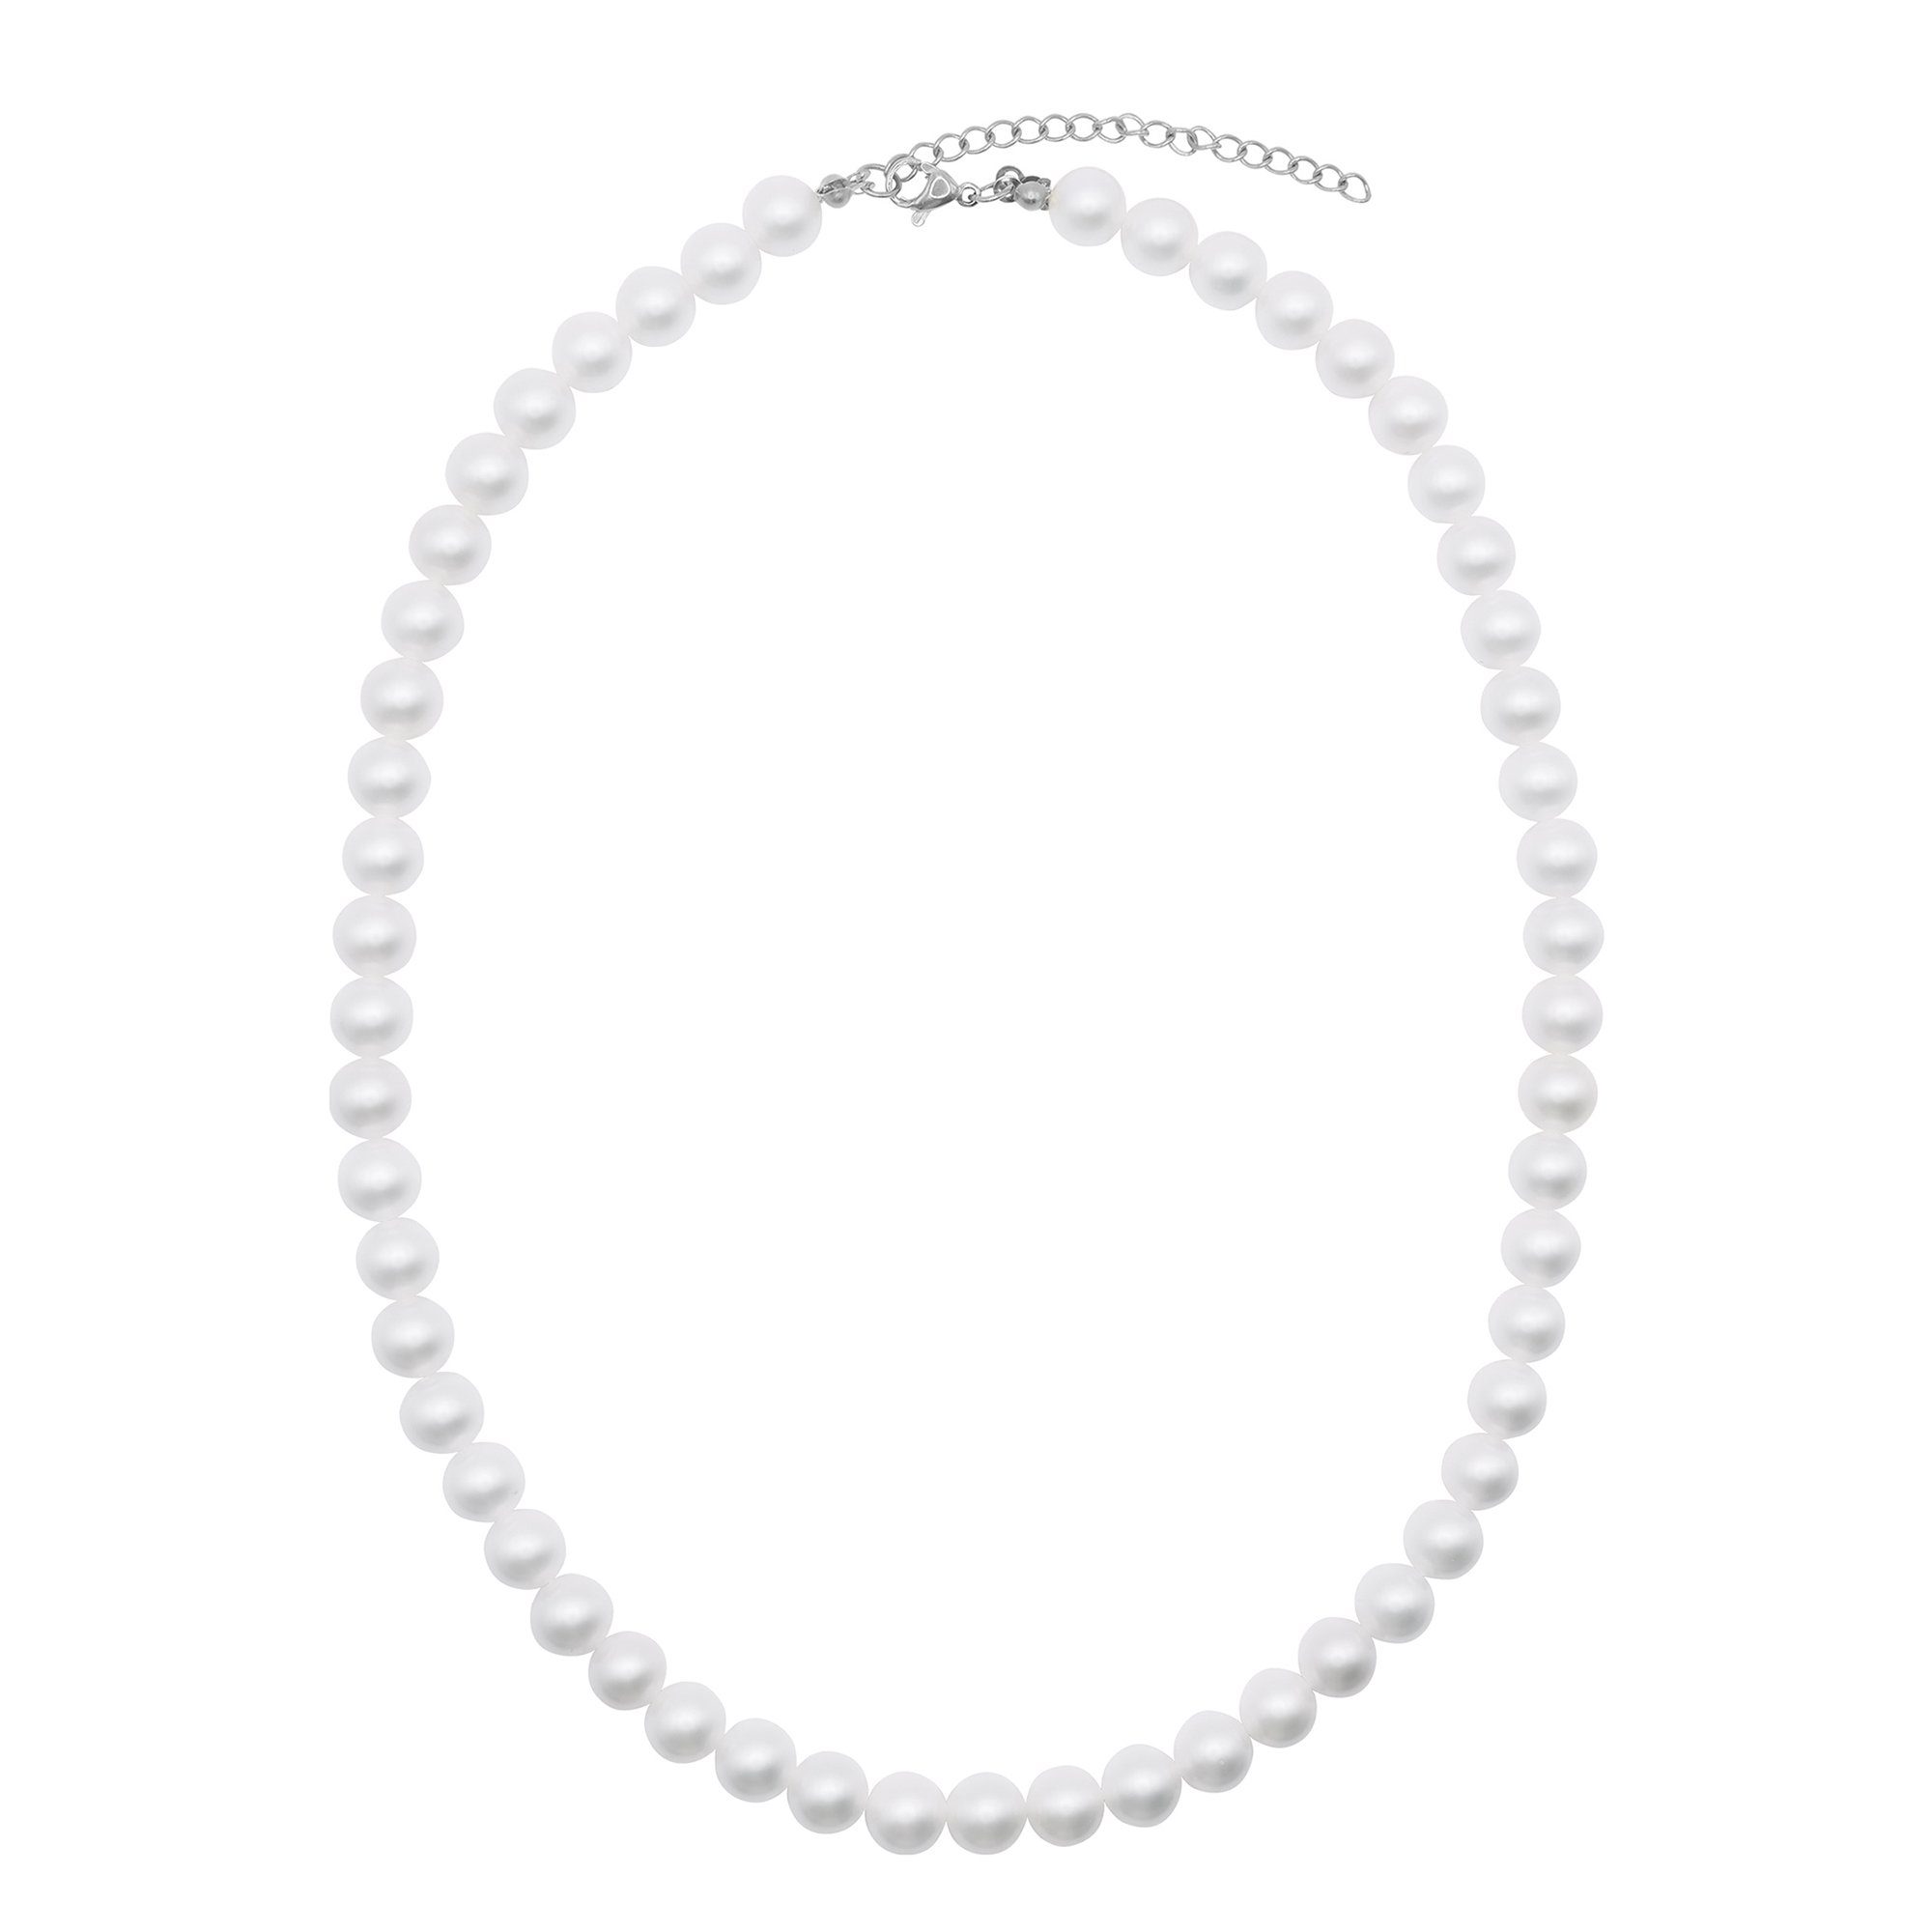 oder weiß No. (inkl. glanzmatt Heideman Perlenkette Collier 8 silberfarben farbig silberfarben poliert Collier Perlen Geschenkverpackung), mit